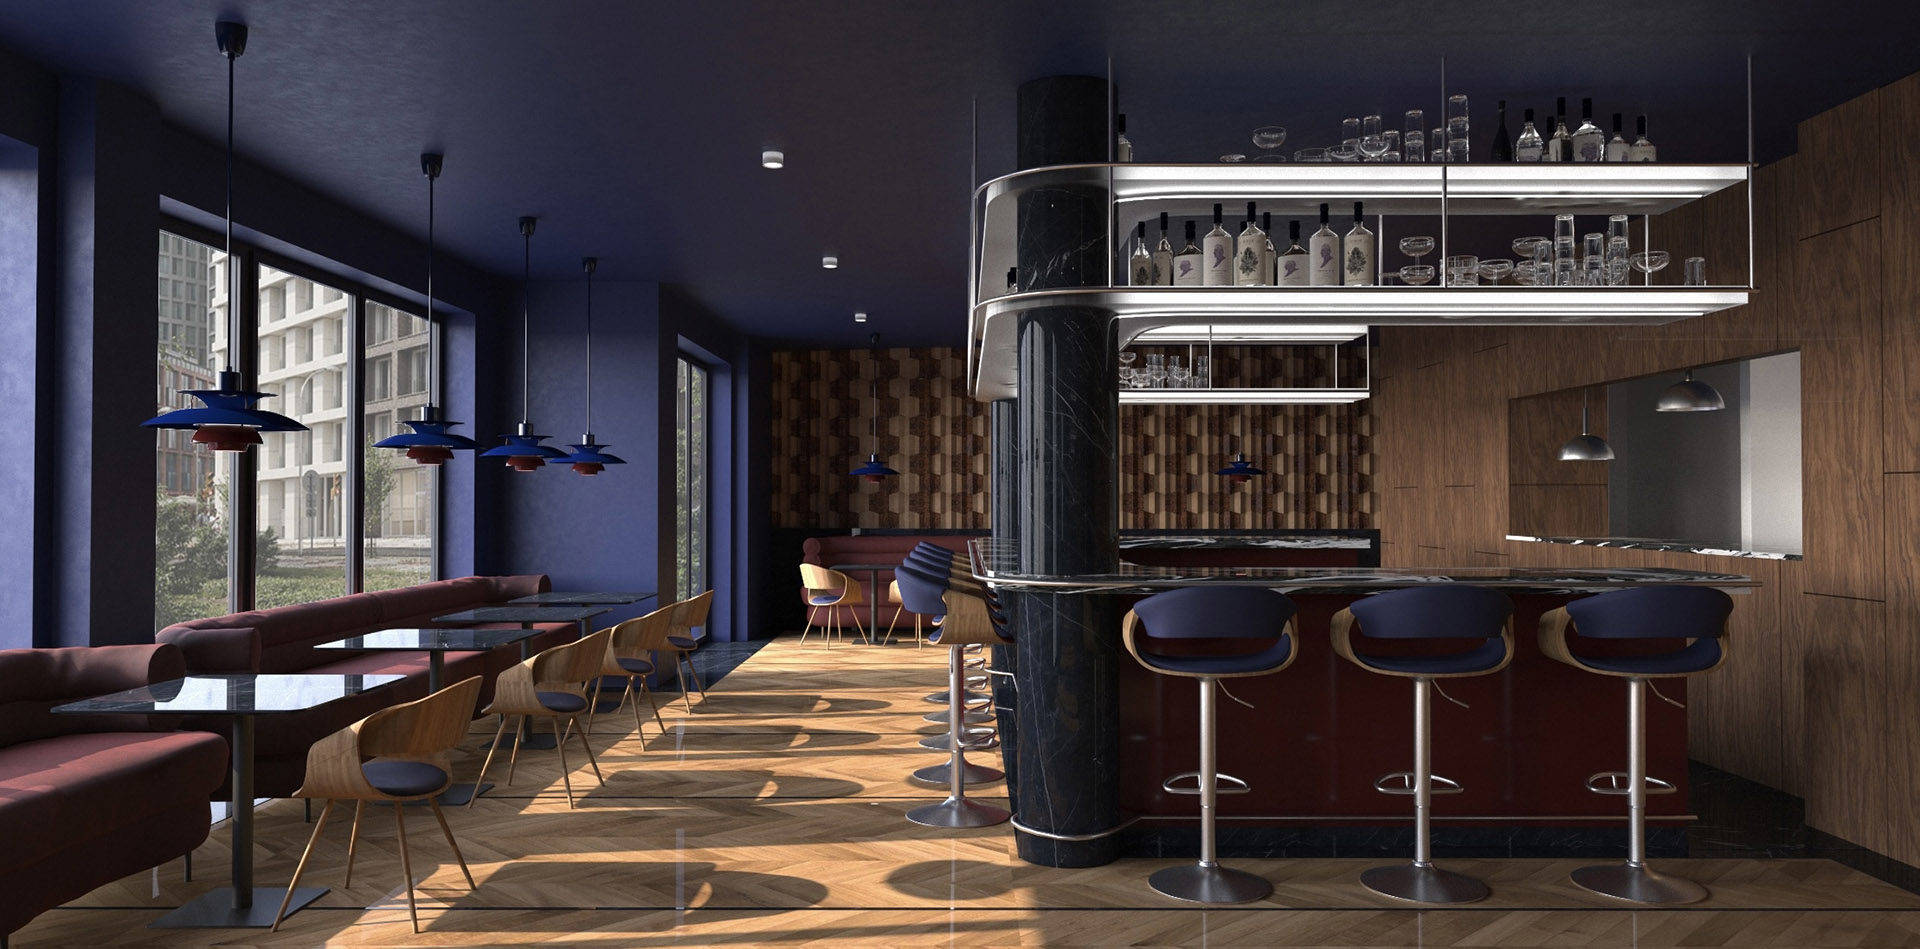 Wizualizacja wnętrza baru, ciemne wnętrze połączenie granatu i stolarki. Widok na bar.